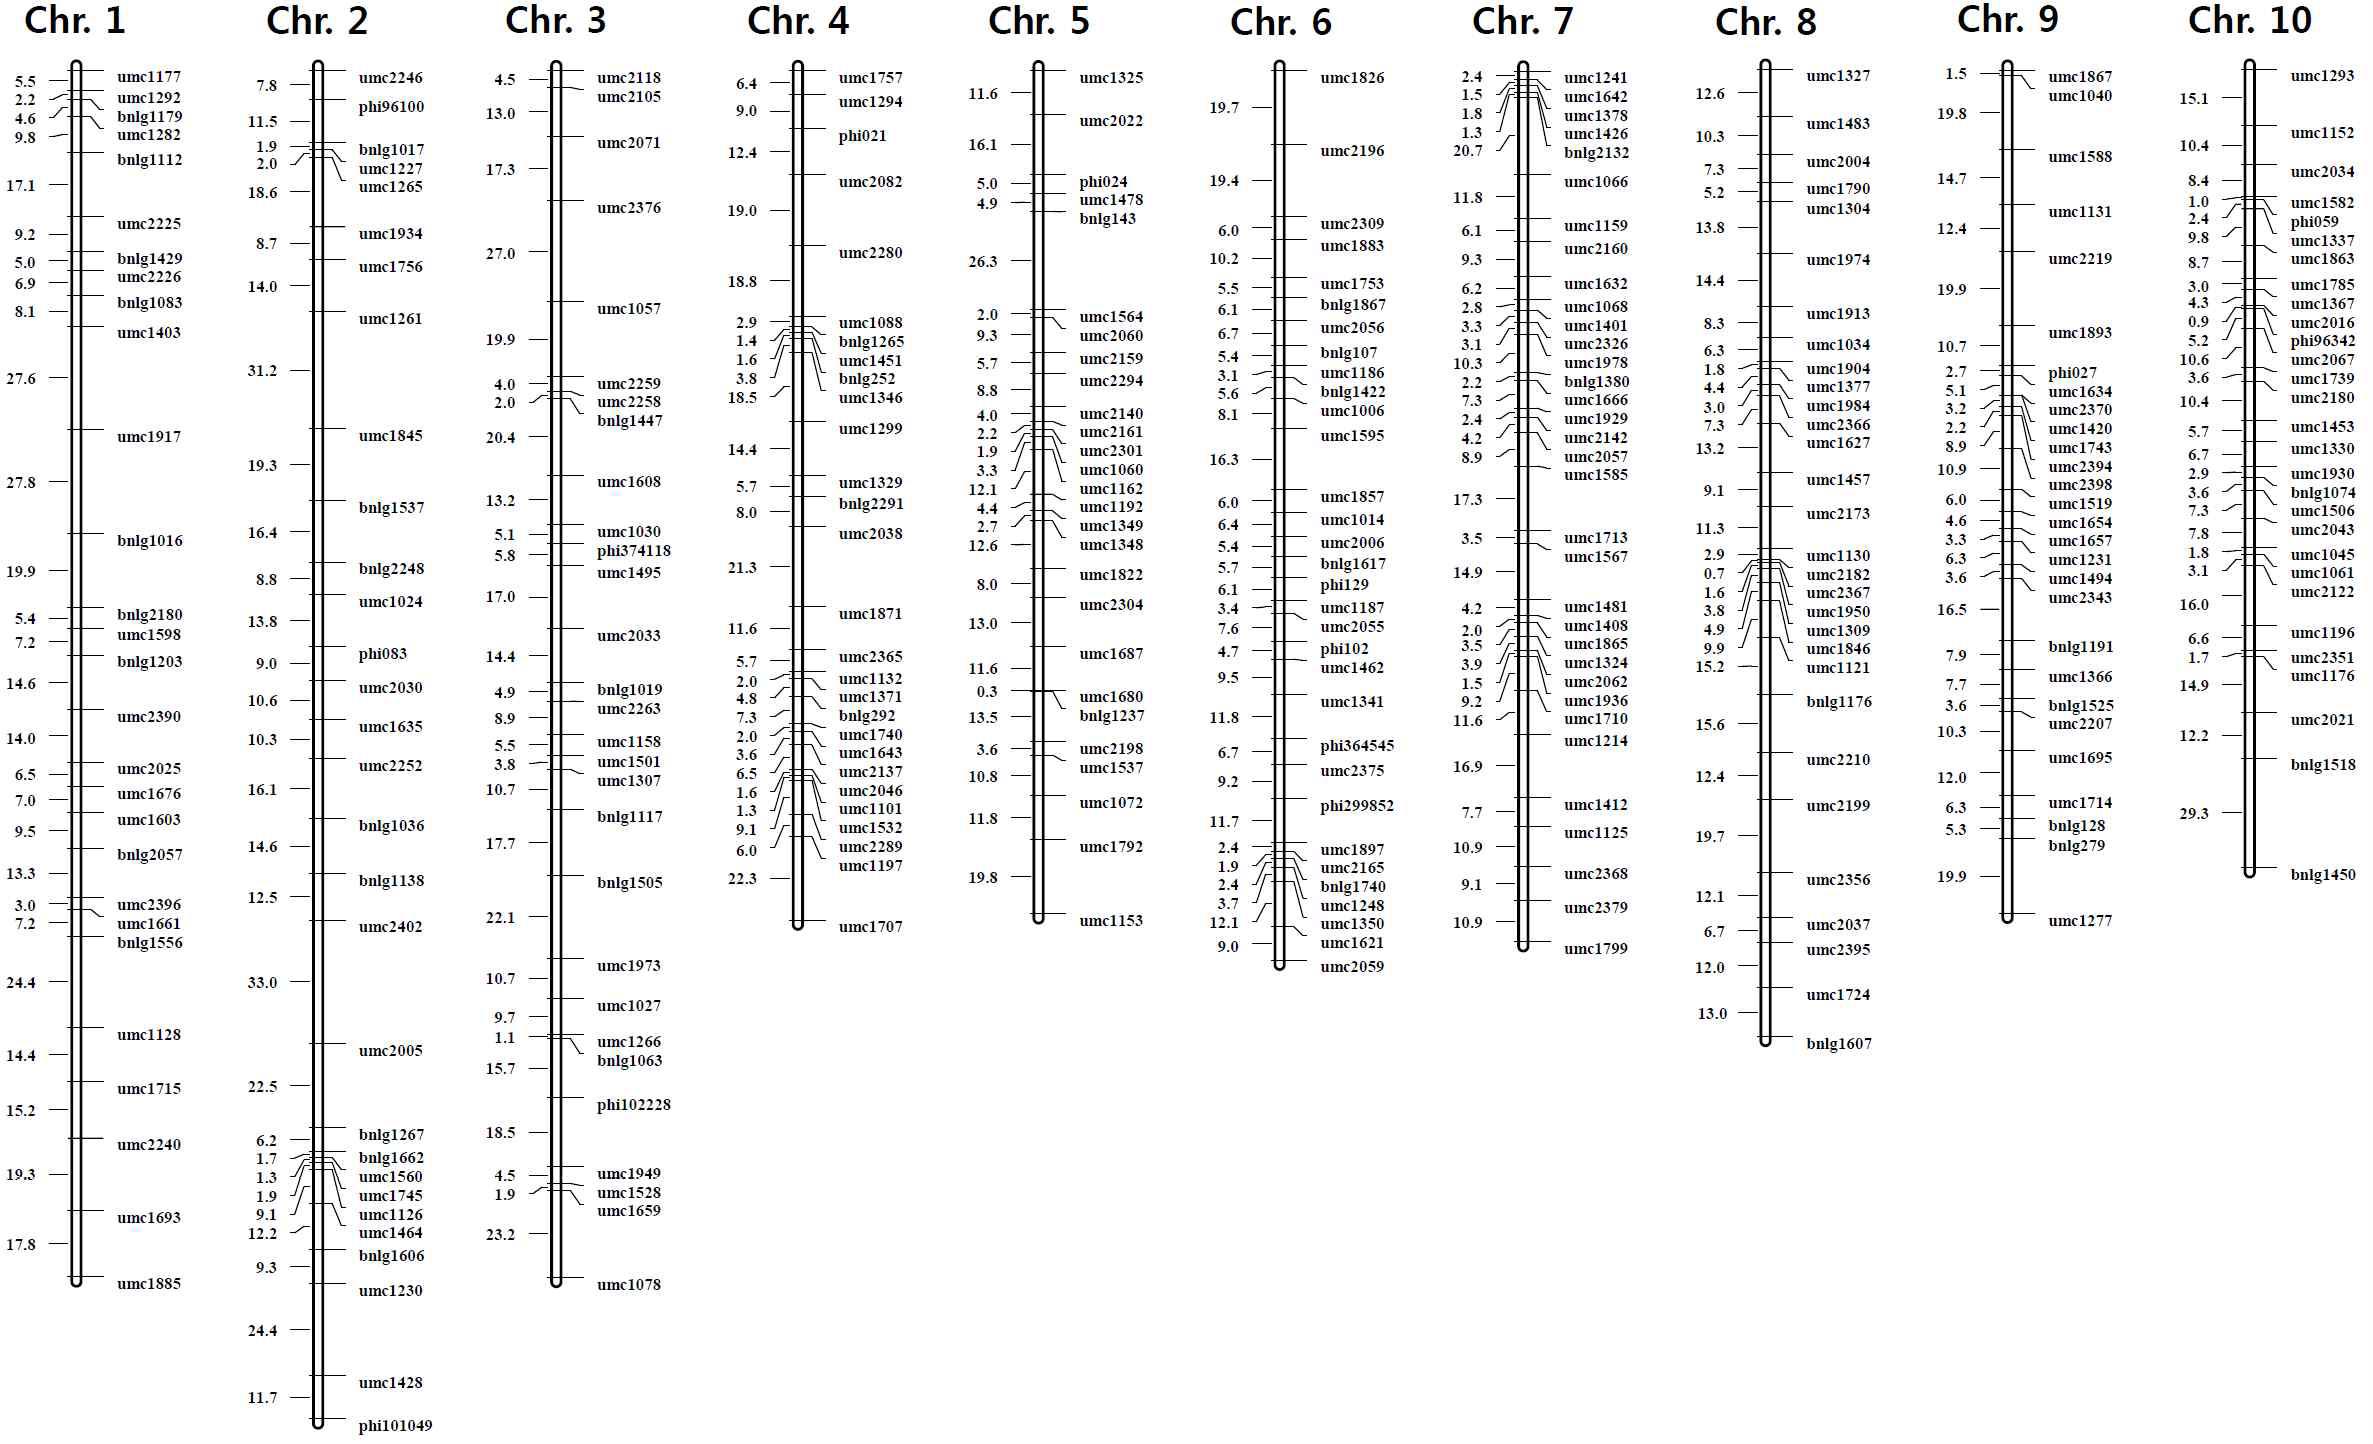 옥수수 F2 mapping 집단에 대하여 SSR 마커를 이용하여 구축된 유전자지도